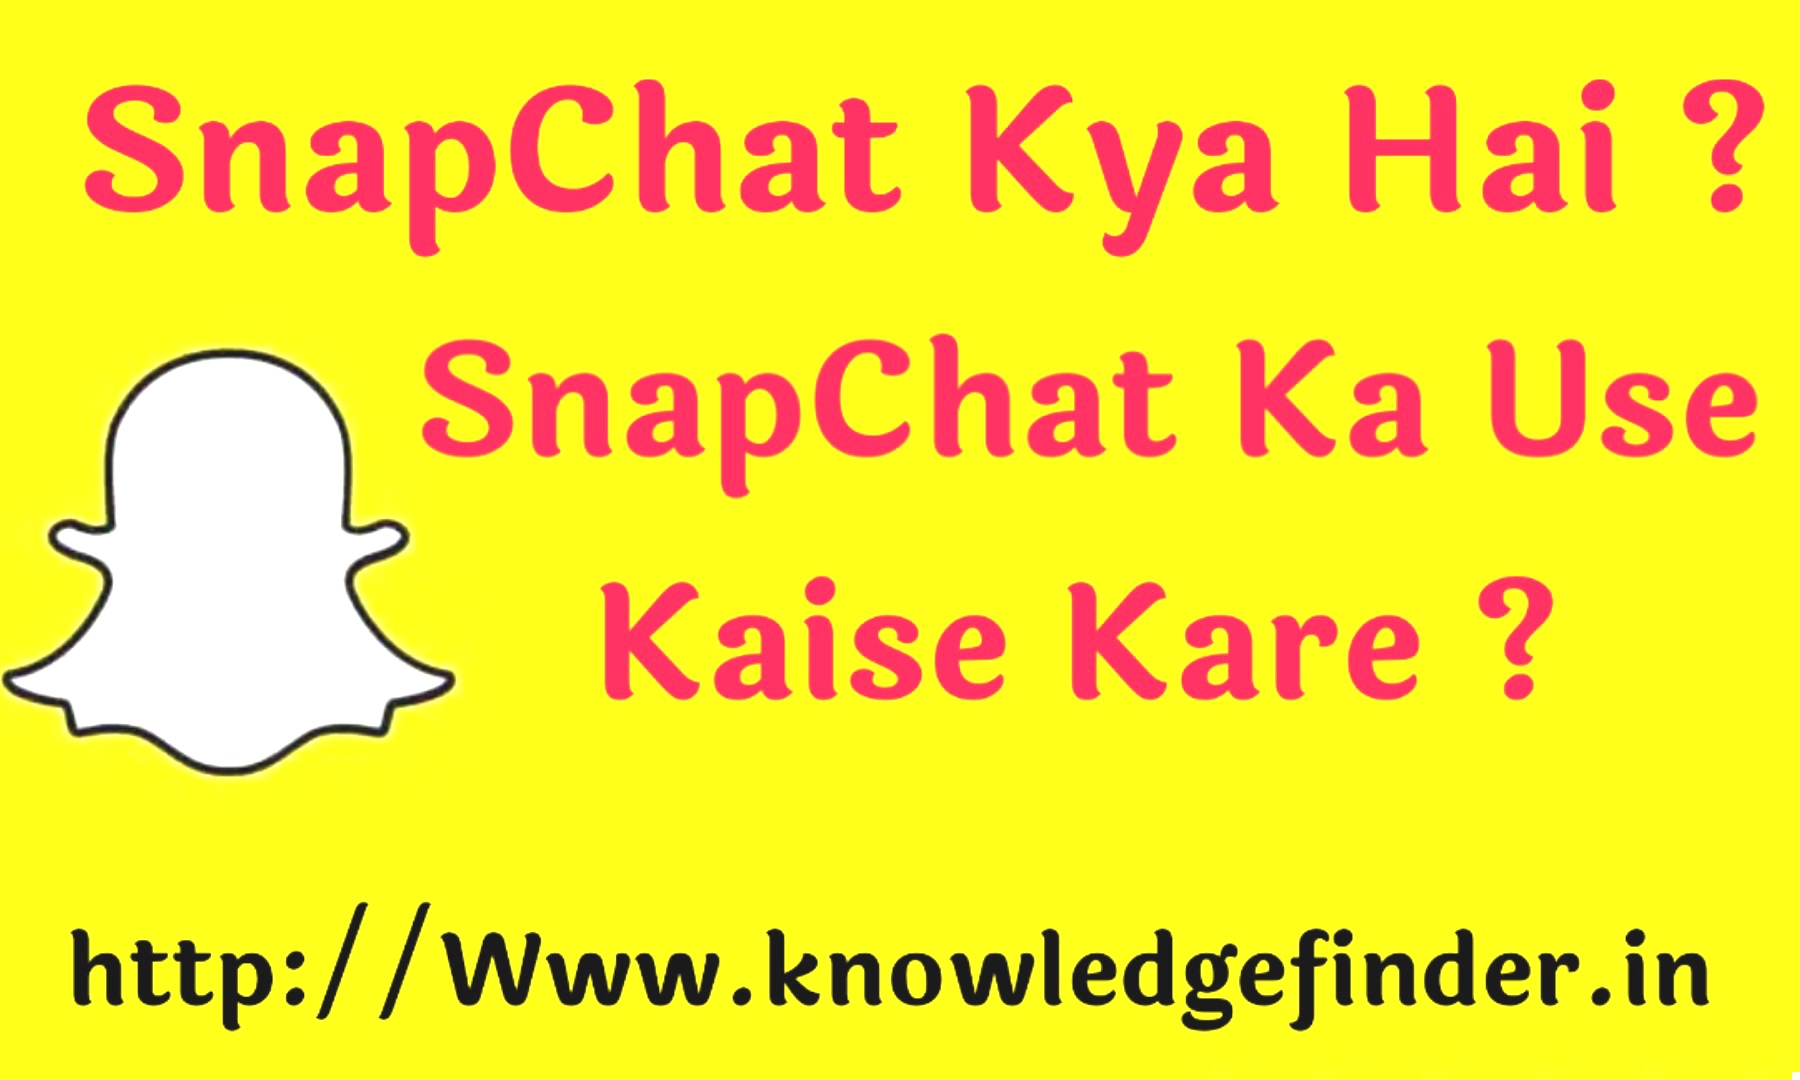 Snapchat kya hai ? | Full details of Snapchat in Hindi